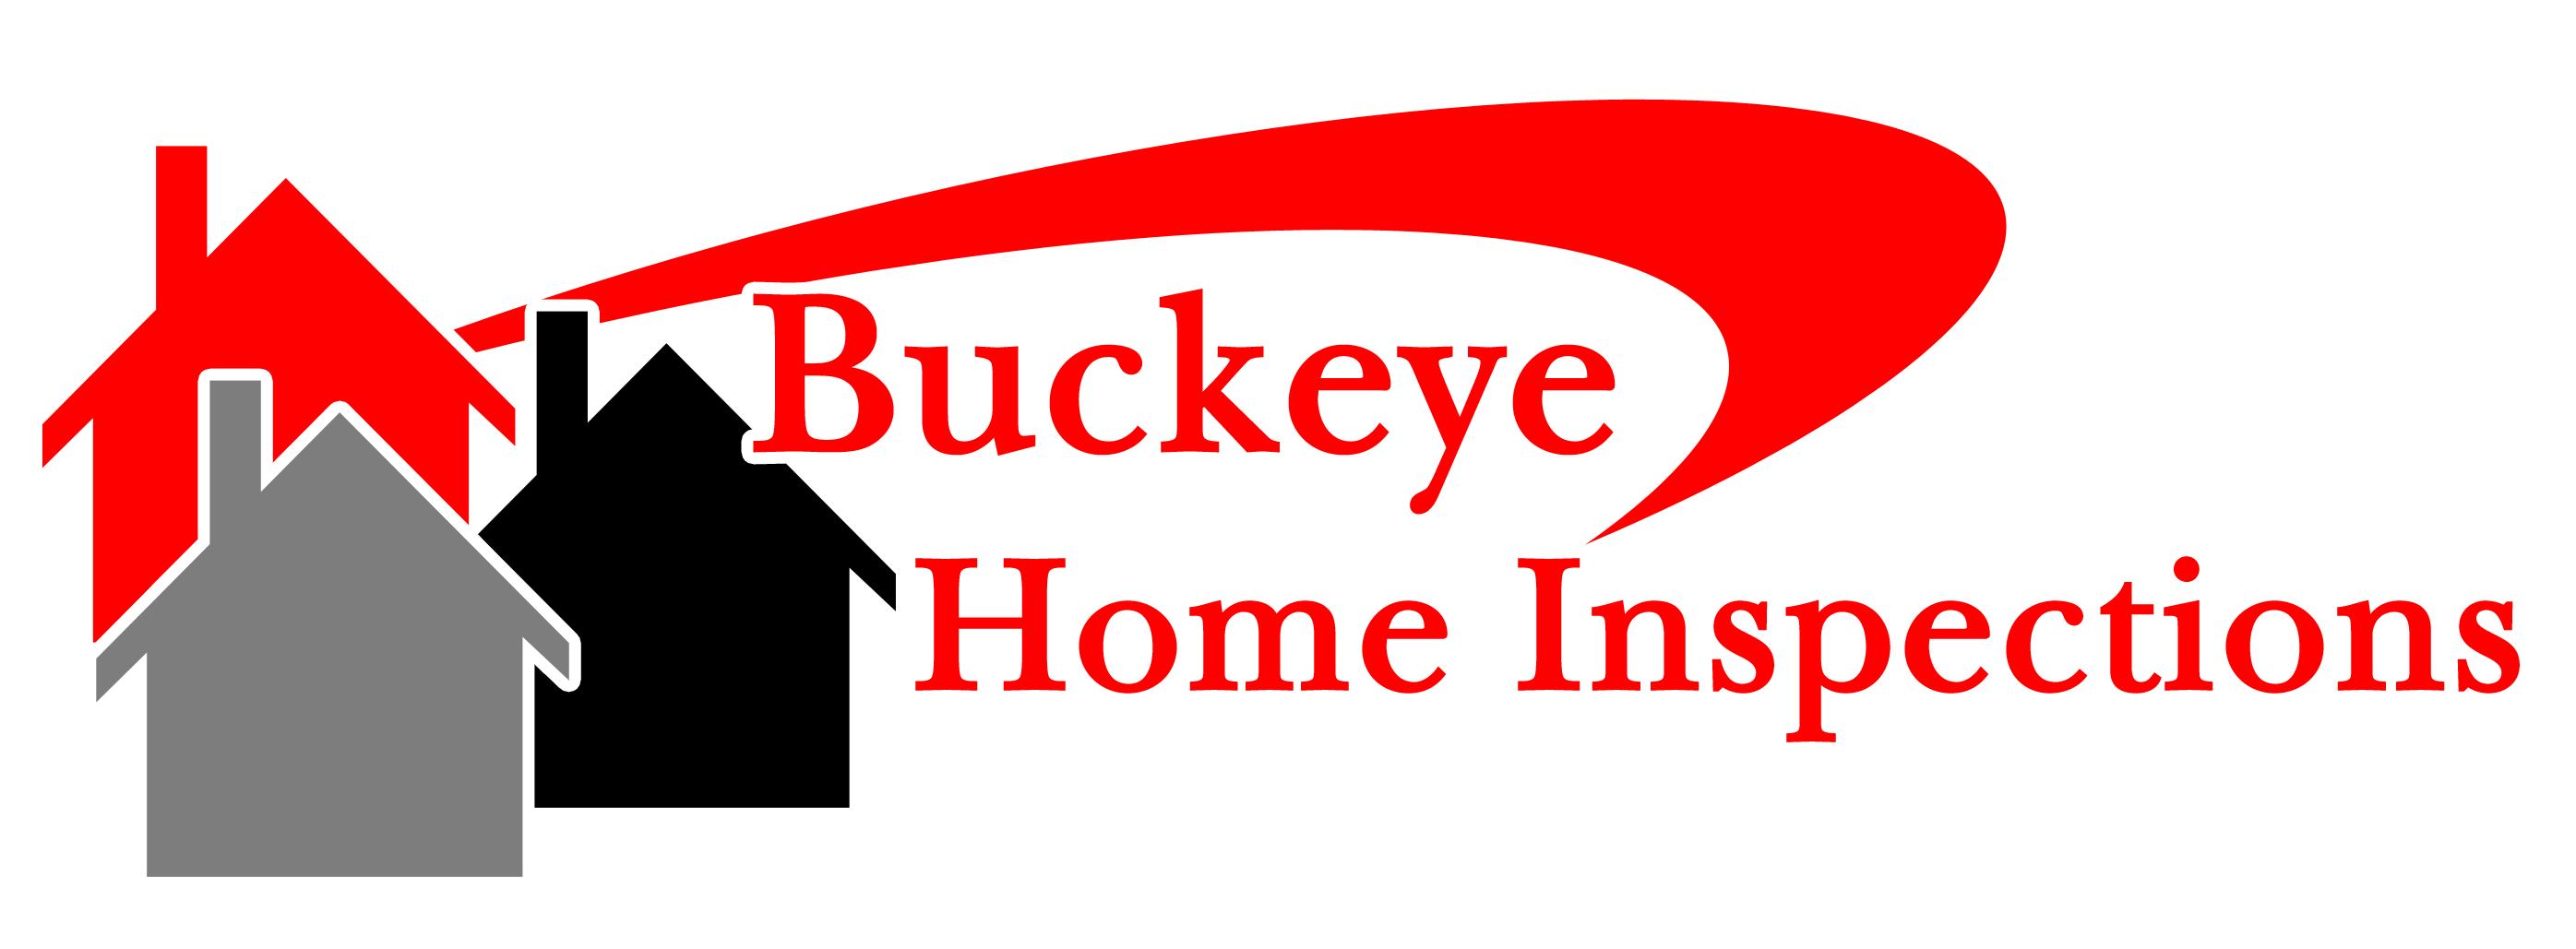 Buckeye Home Inspections